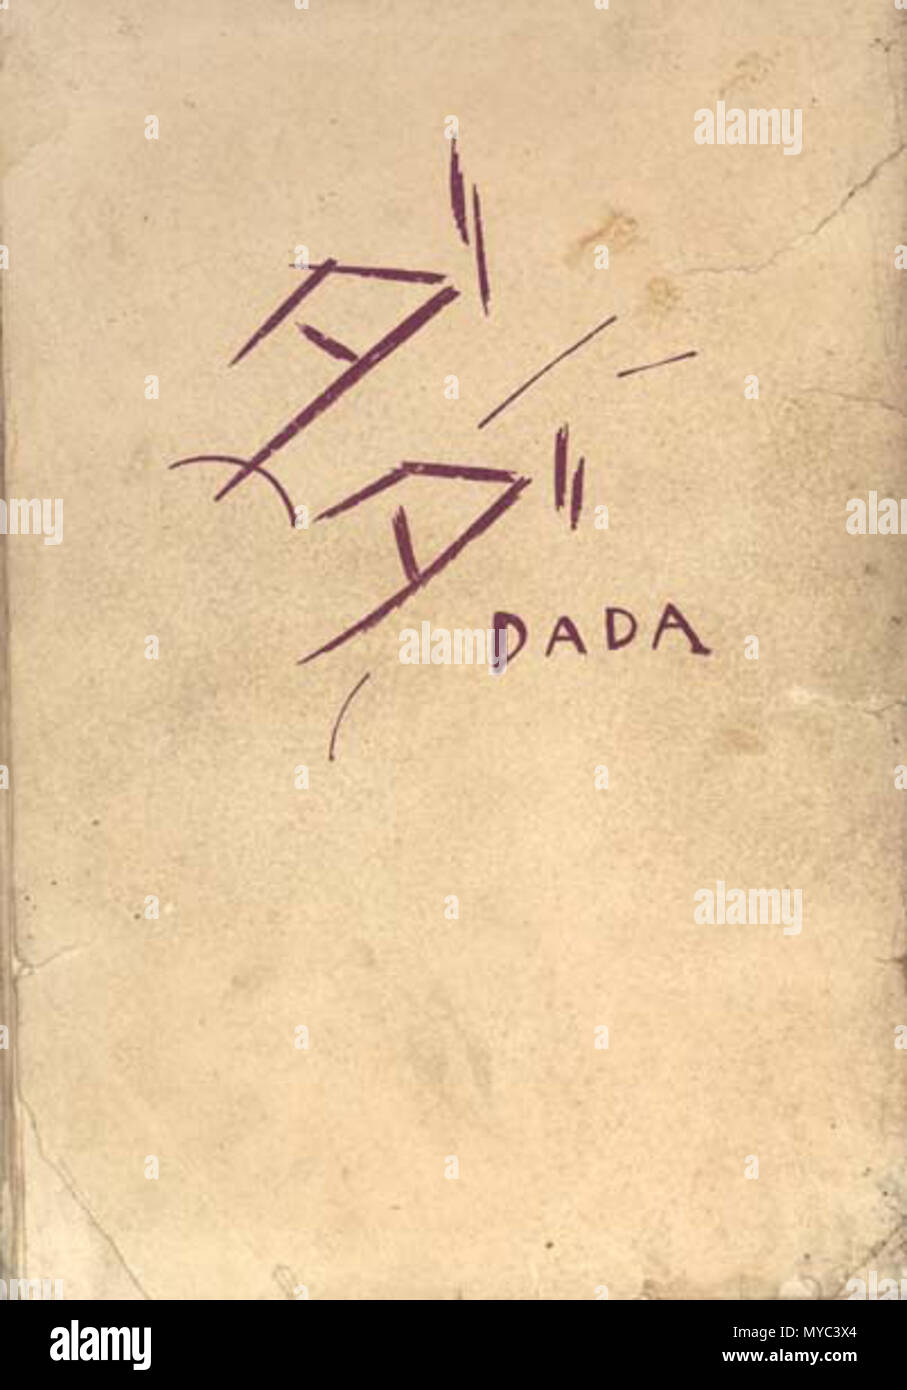 . Deutsch: DADA - Shinkichi Takahashi (1924) . 1924. 高橋新吉 (Takahashi Shinkichi, 1901-1987) 130 Dada - Takahashi Shinkichi Foto Stock